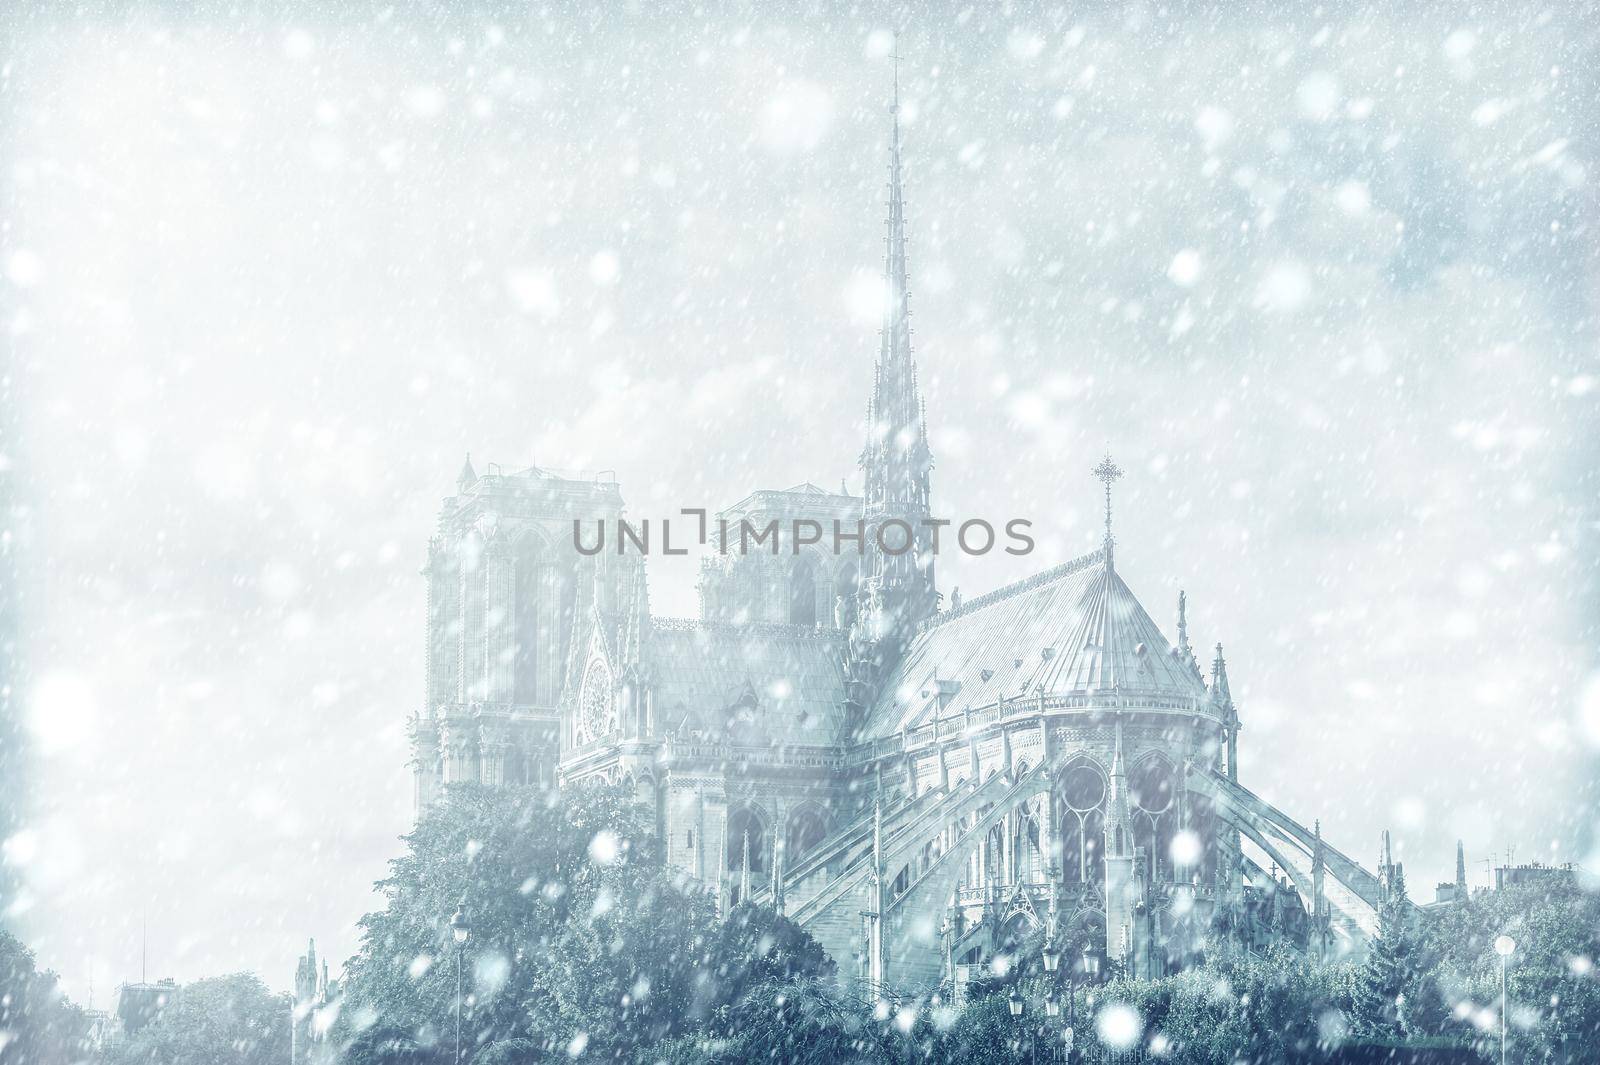 View of Notre Dame de Paris, France with snow